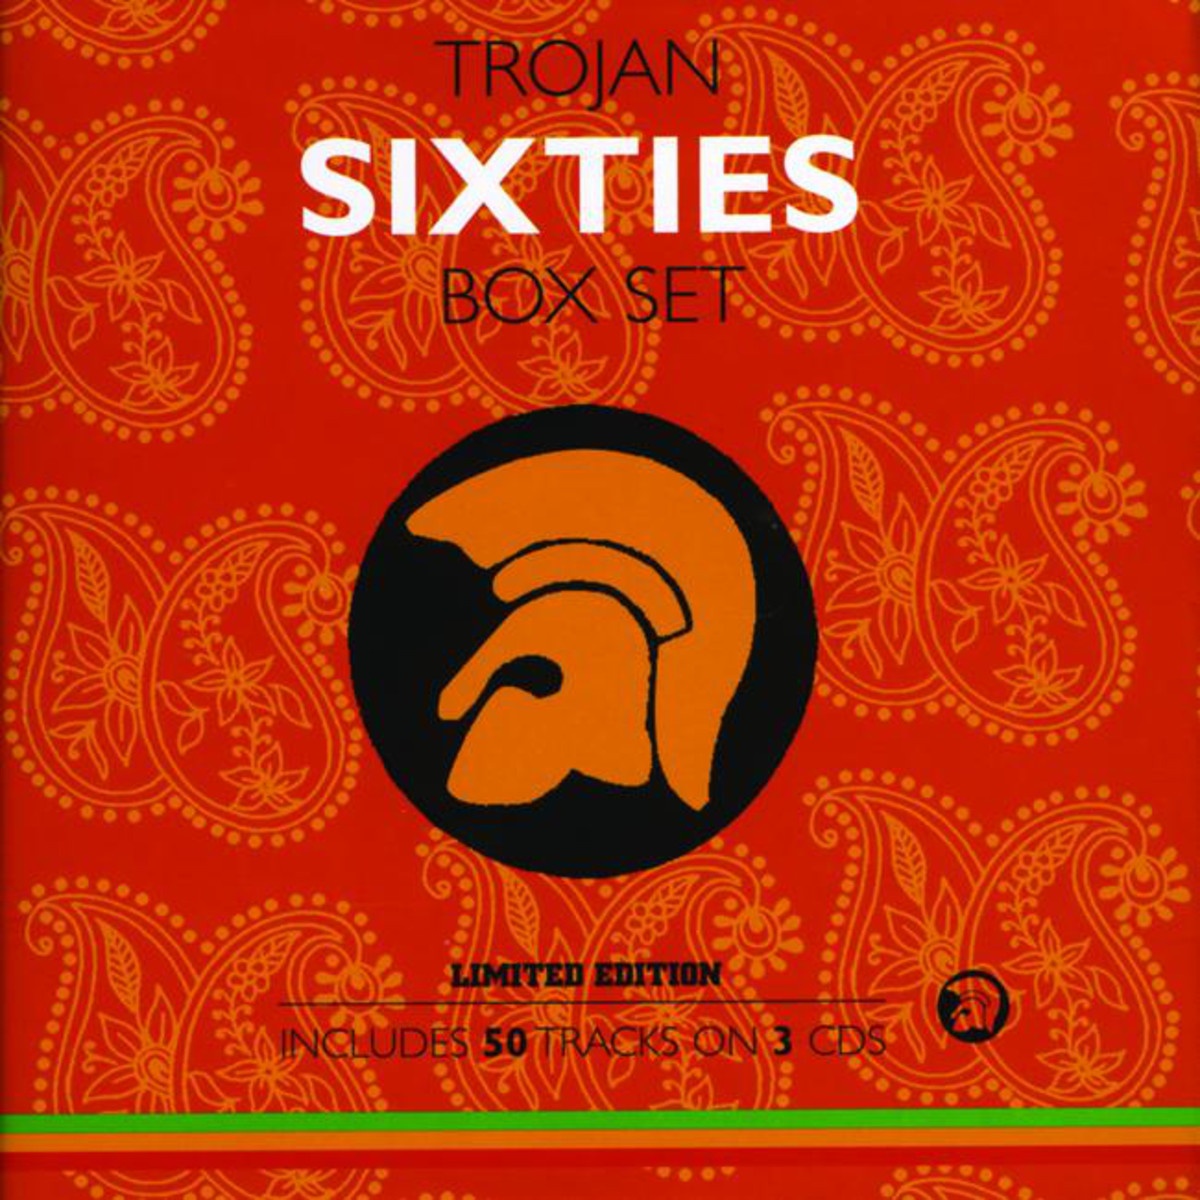 Trojan Sixties Box Set